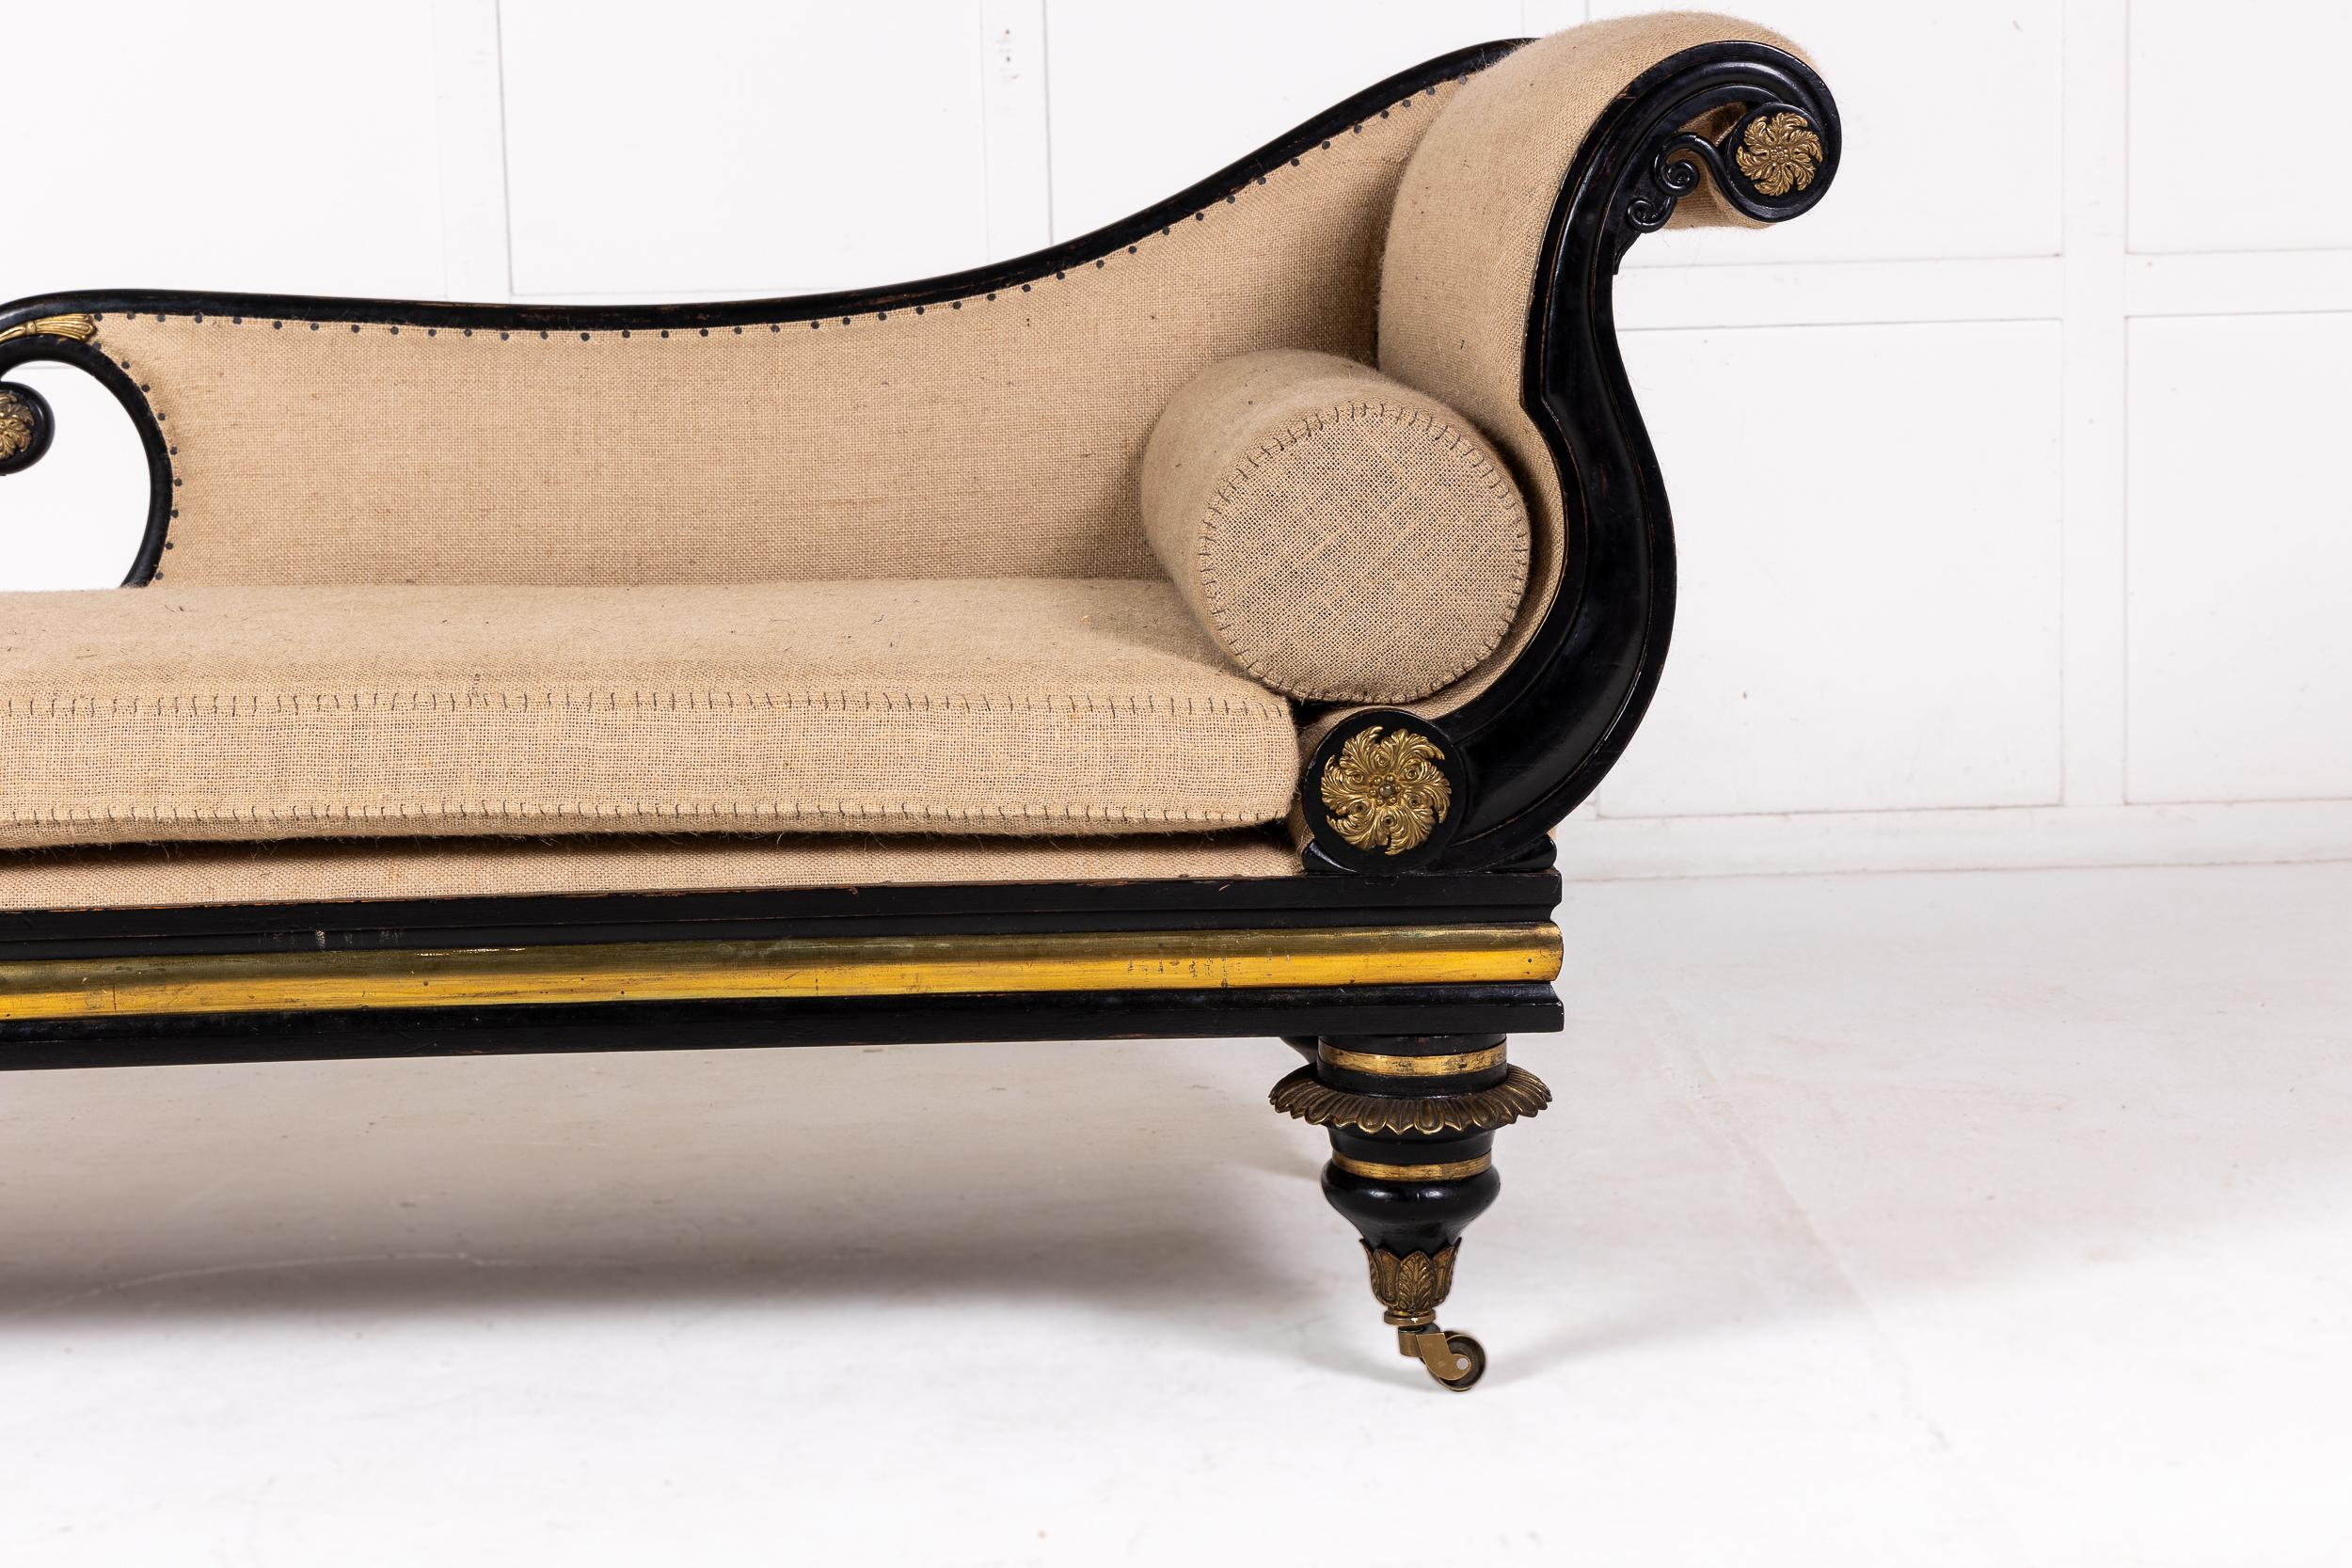 Eine sehr beeindruckende Chaiselongue oder Liege aus Ebenholz aus der Regency-Zeit mit vergoldeten Messingbeschlägen.

Diese Chaiselongue wurde im Stil der hohen Regentschaft und der damaligen Zeit entworfen und zeichnet sich durch schöne fließende